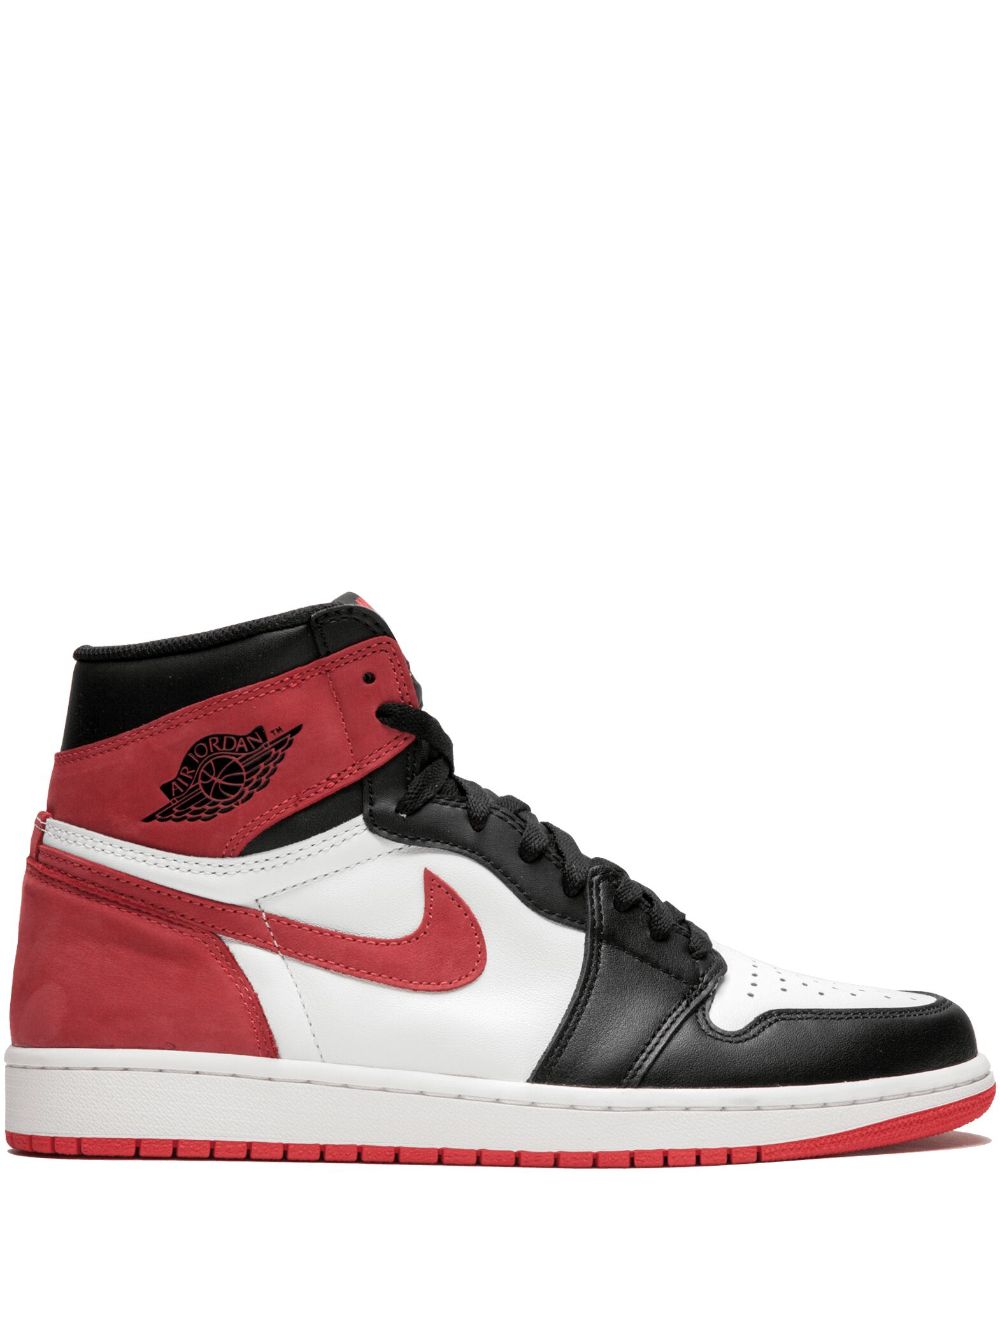 Jordan Air Jordan 1 Retro High OG "Track Red" sneakers - Black von Jordan